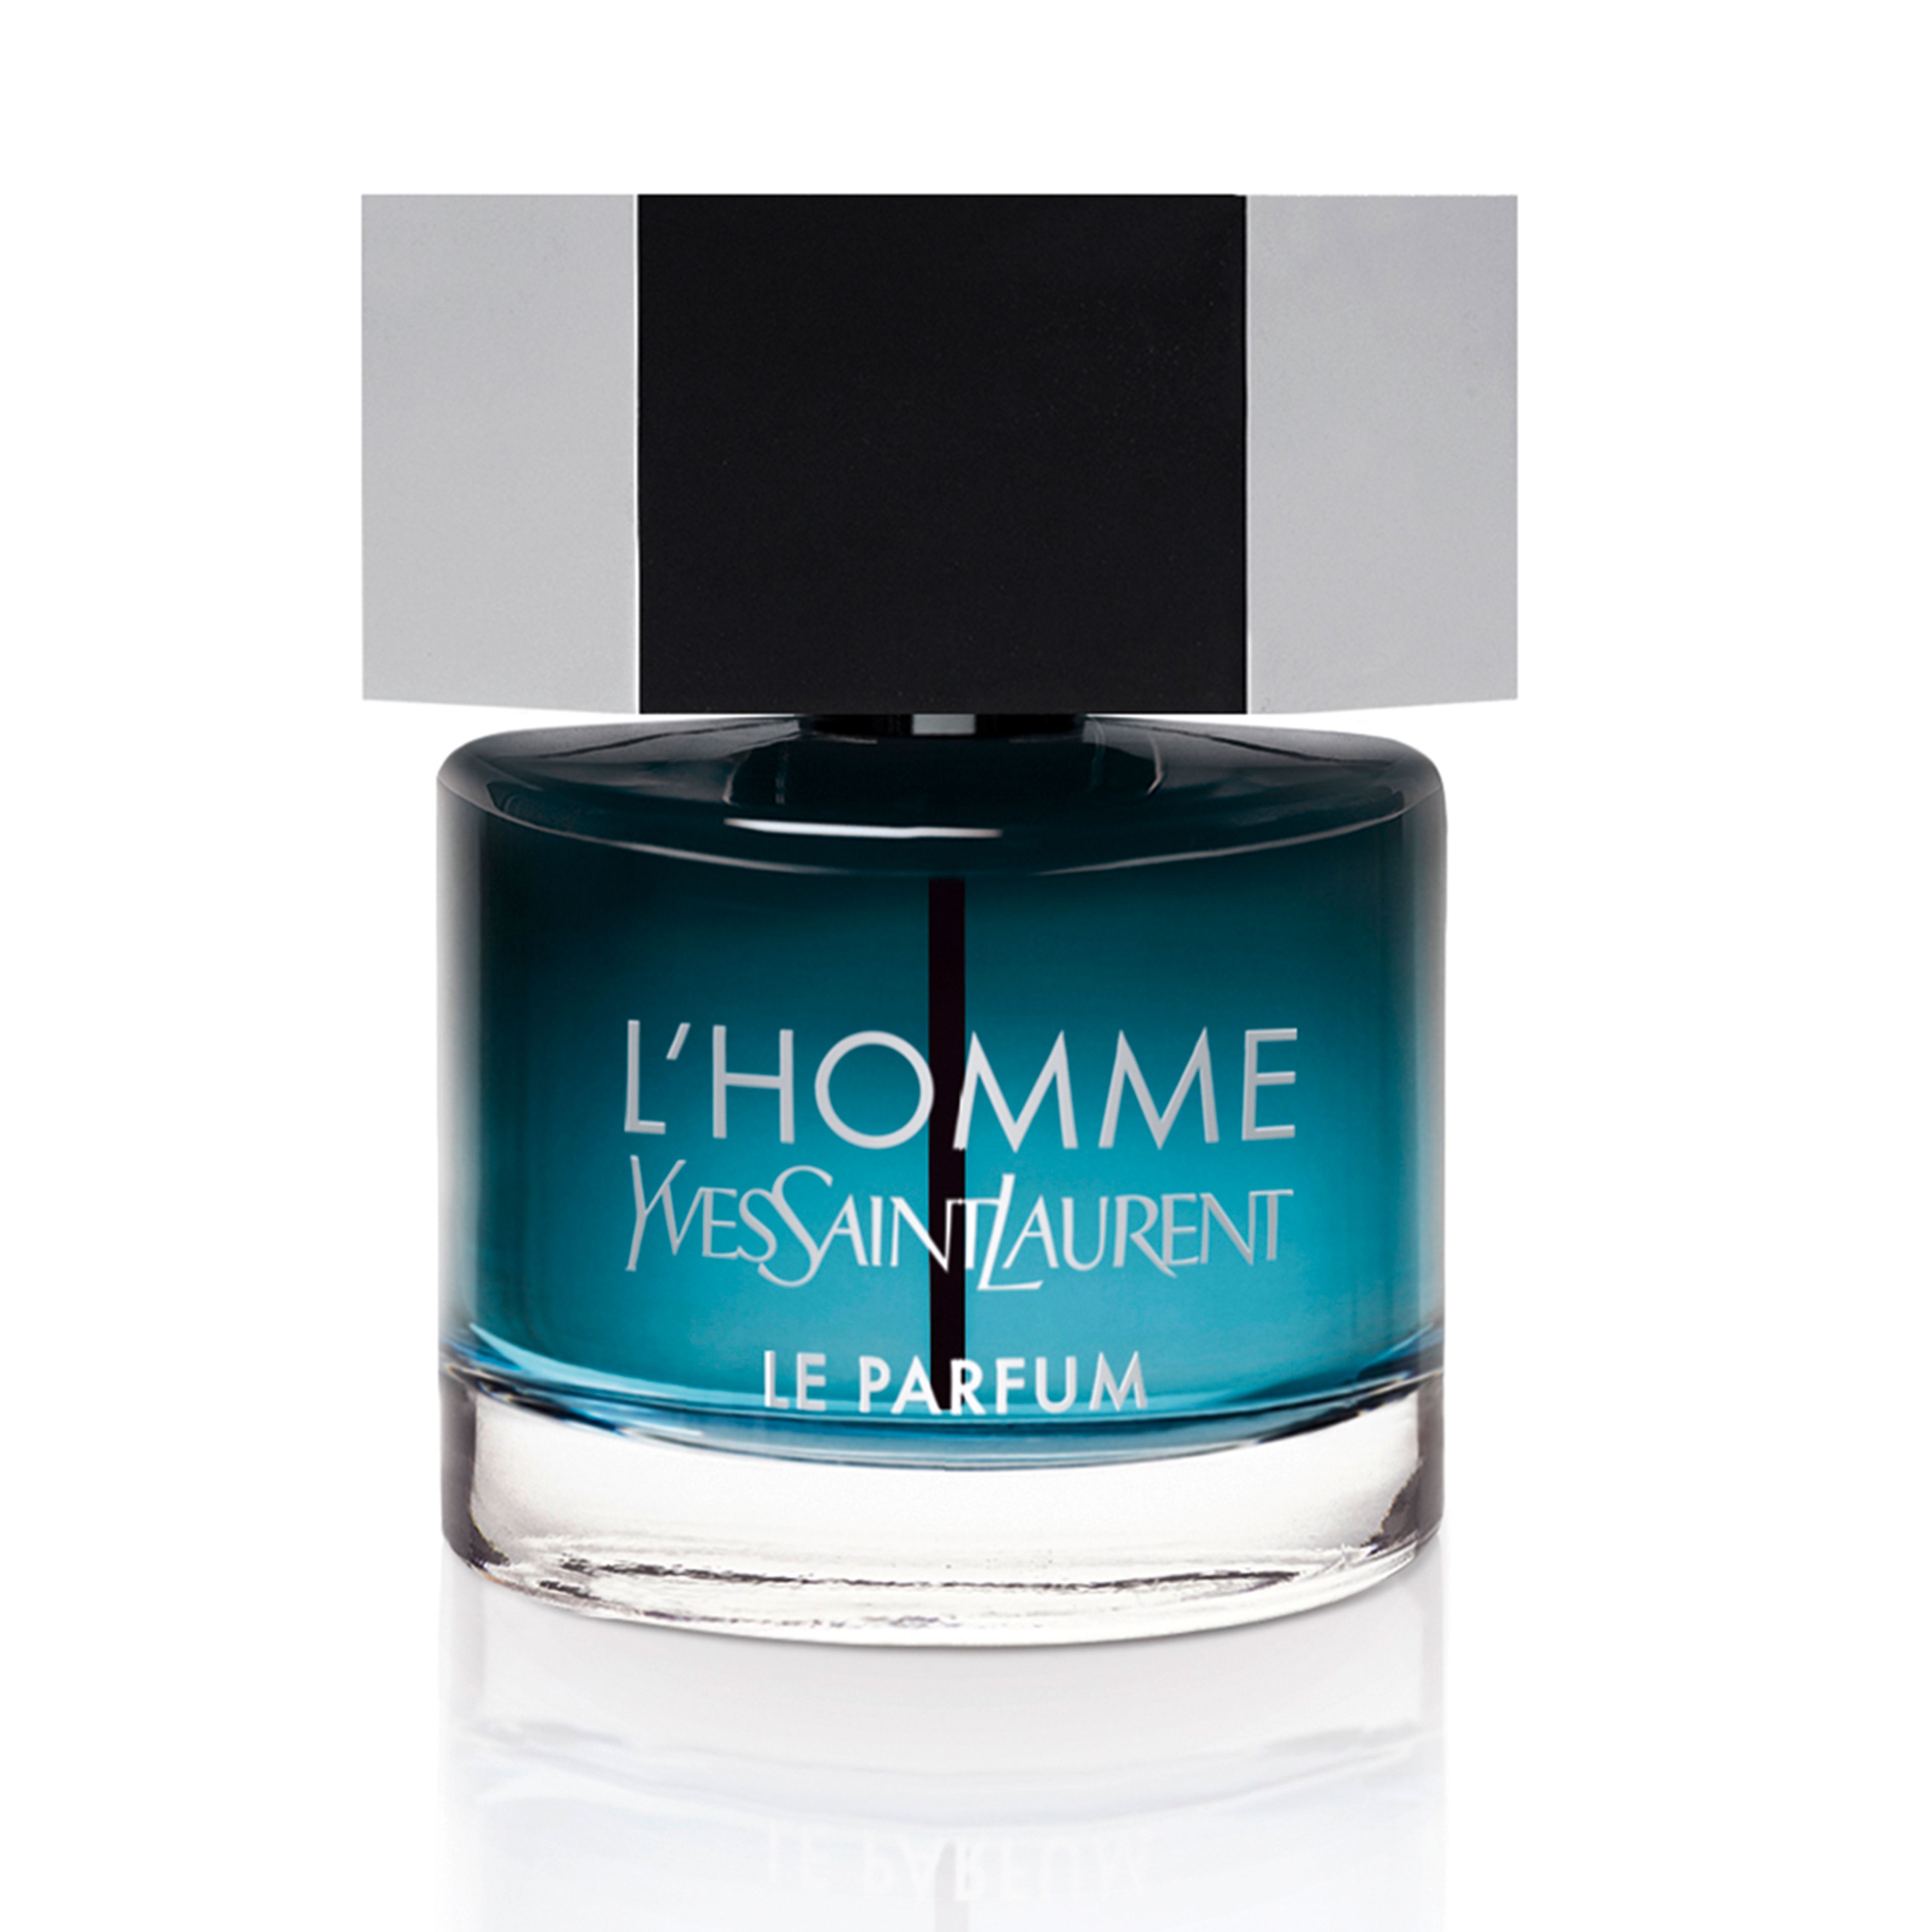 Yves Saint Laurent L'homme Le Parfum 1